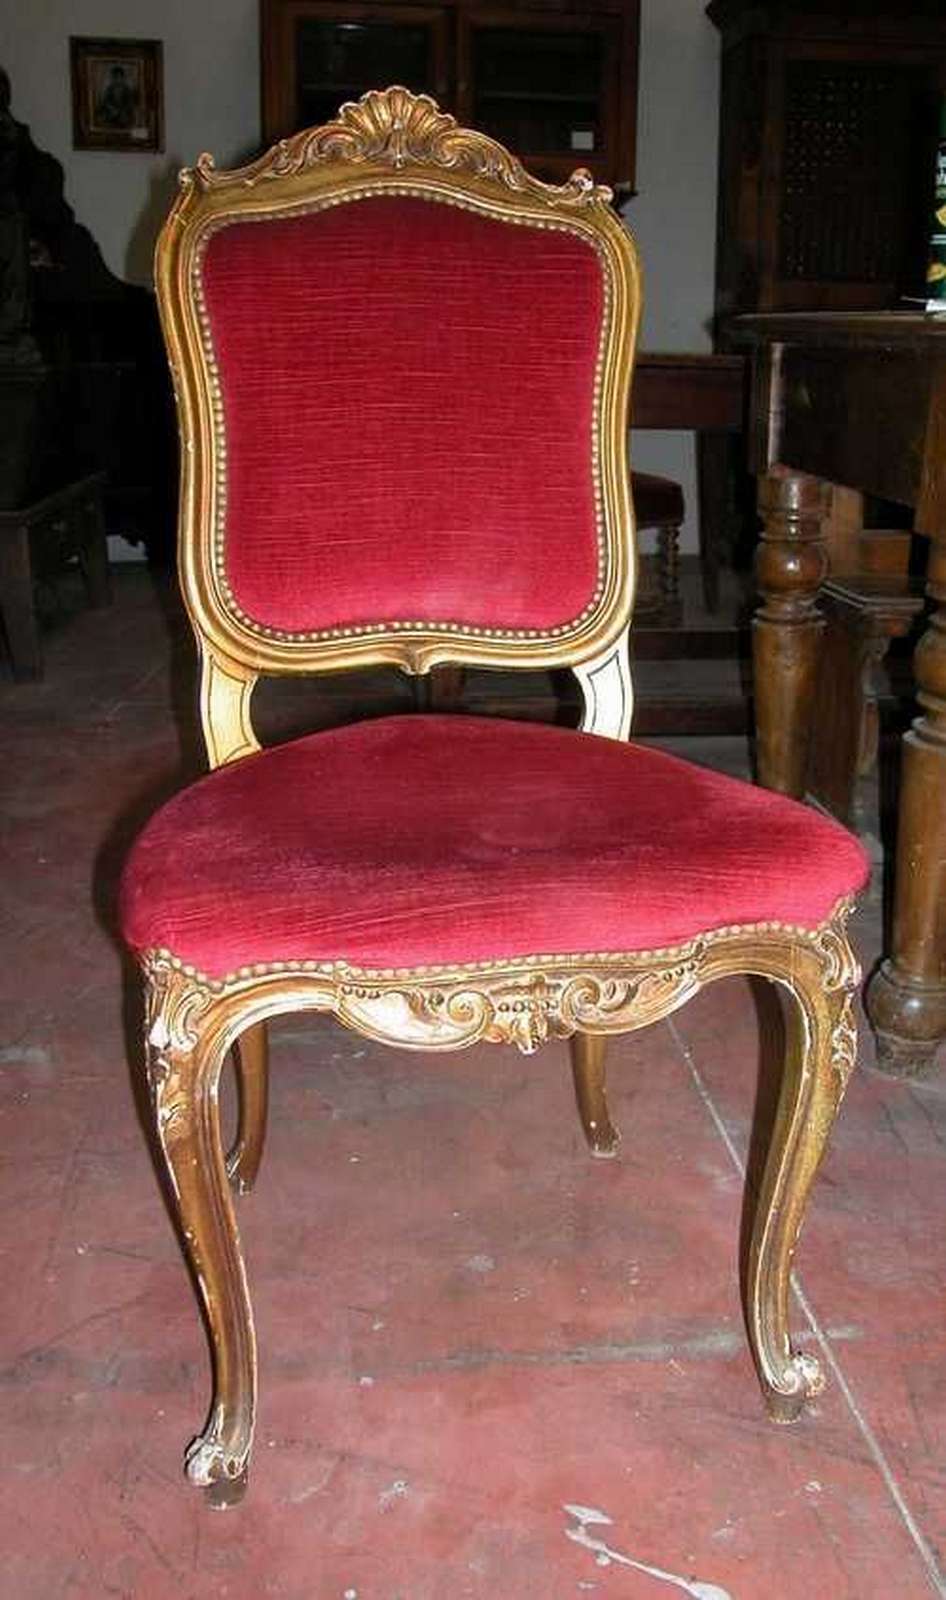 Nr. 2 sedie in legno - Salotti e Sedie - Mobili antichi - Prodotti - Antichità Fiorillo